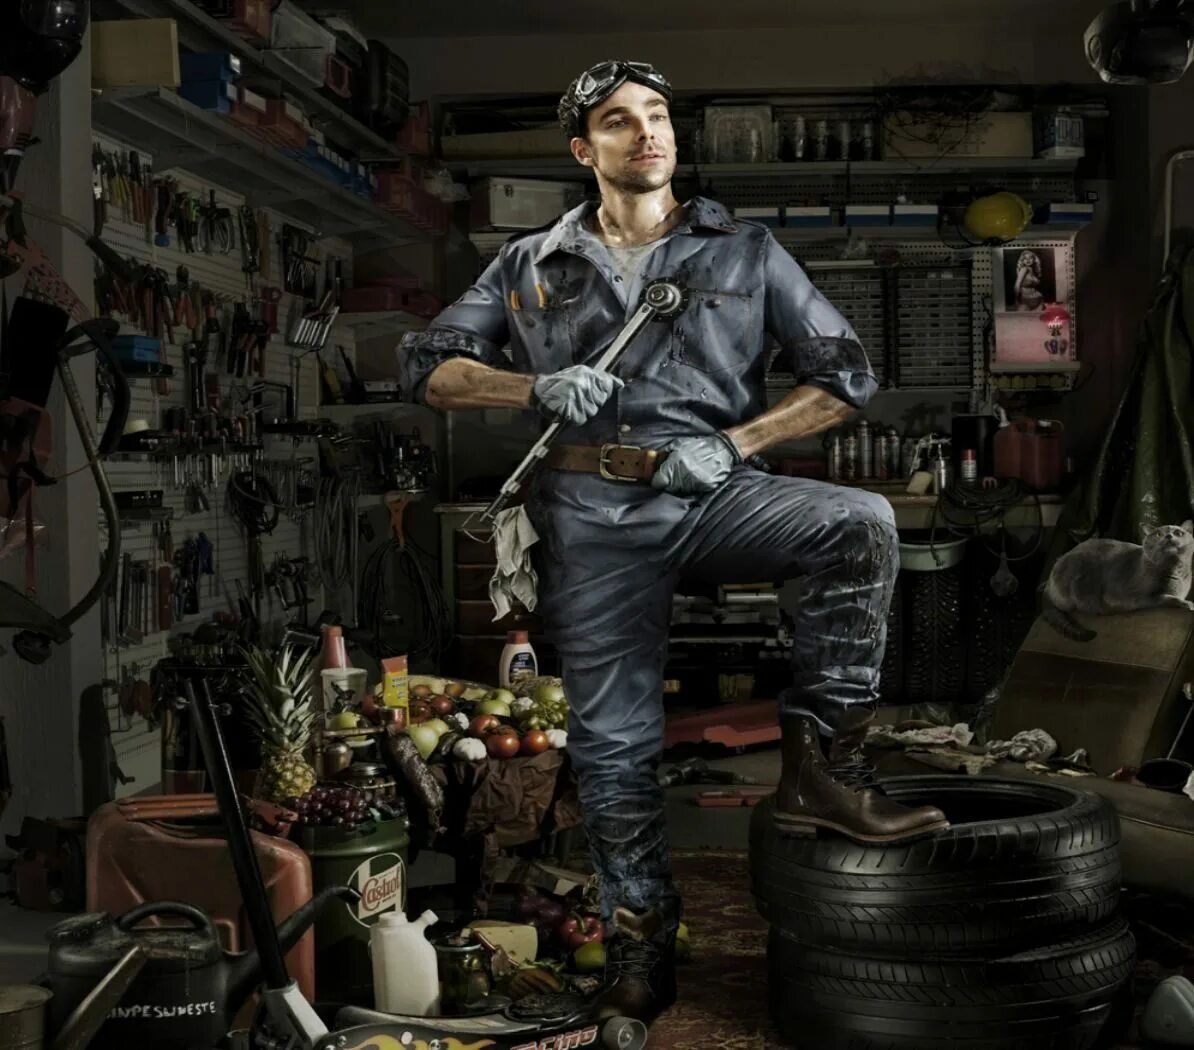 В феврале в мастерской. Фотограф Фредди Фабрис. Мужчина в гараже. Автомеханик. Креативная реклама автомастерской.